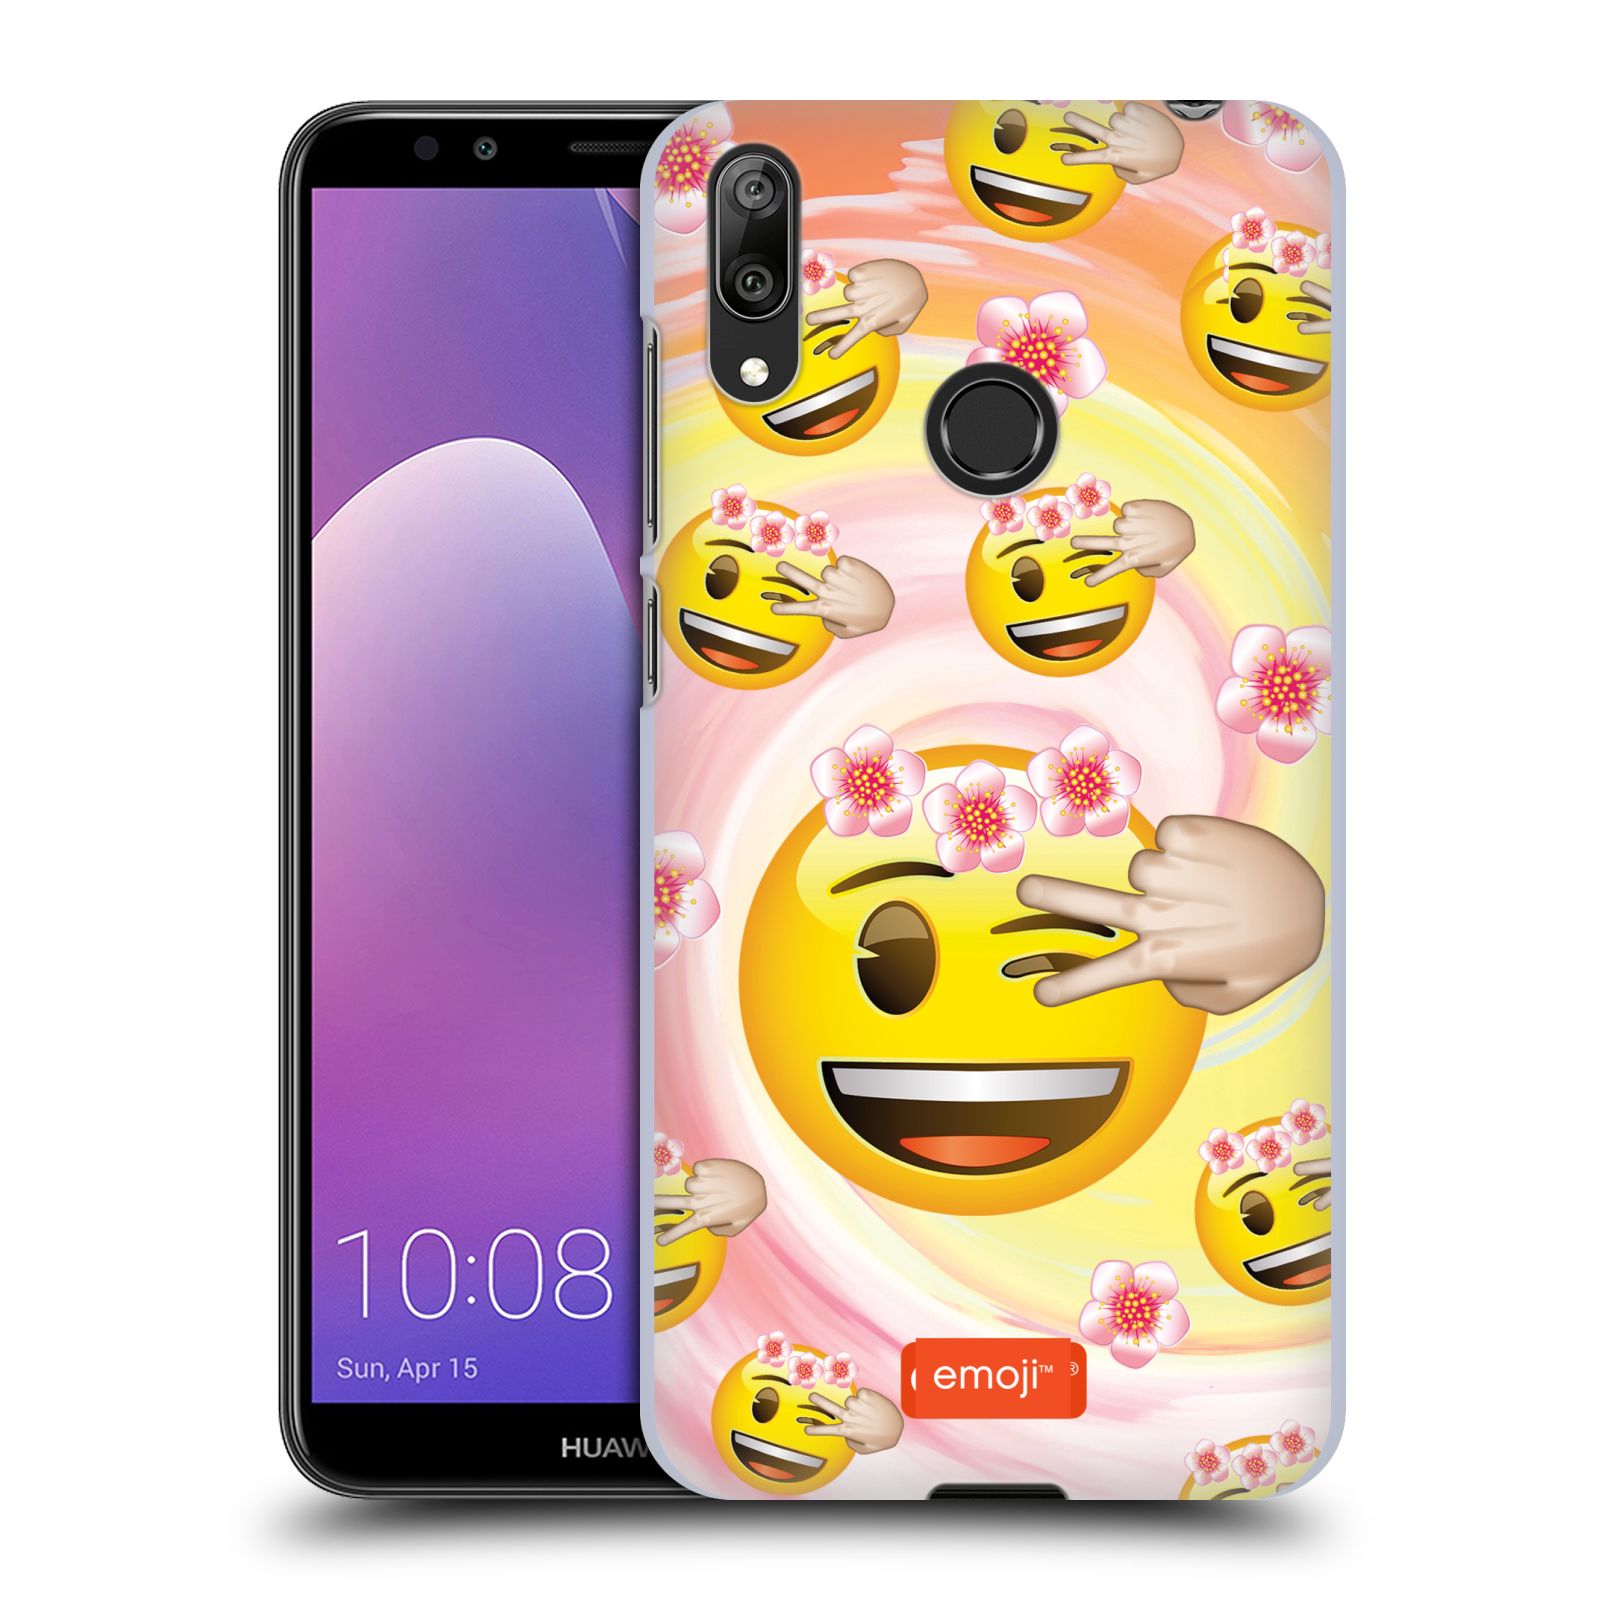 Pouzdro na mobil Huawei Y7 2019 - Head Case - smajlík oficiální kryt EMOJI velký smajlík květiny věneček